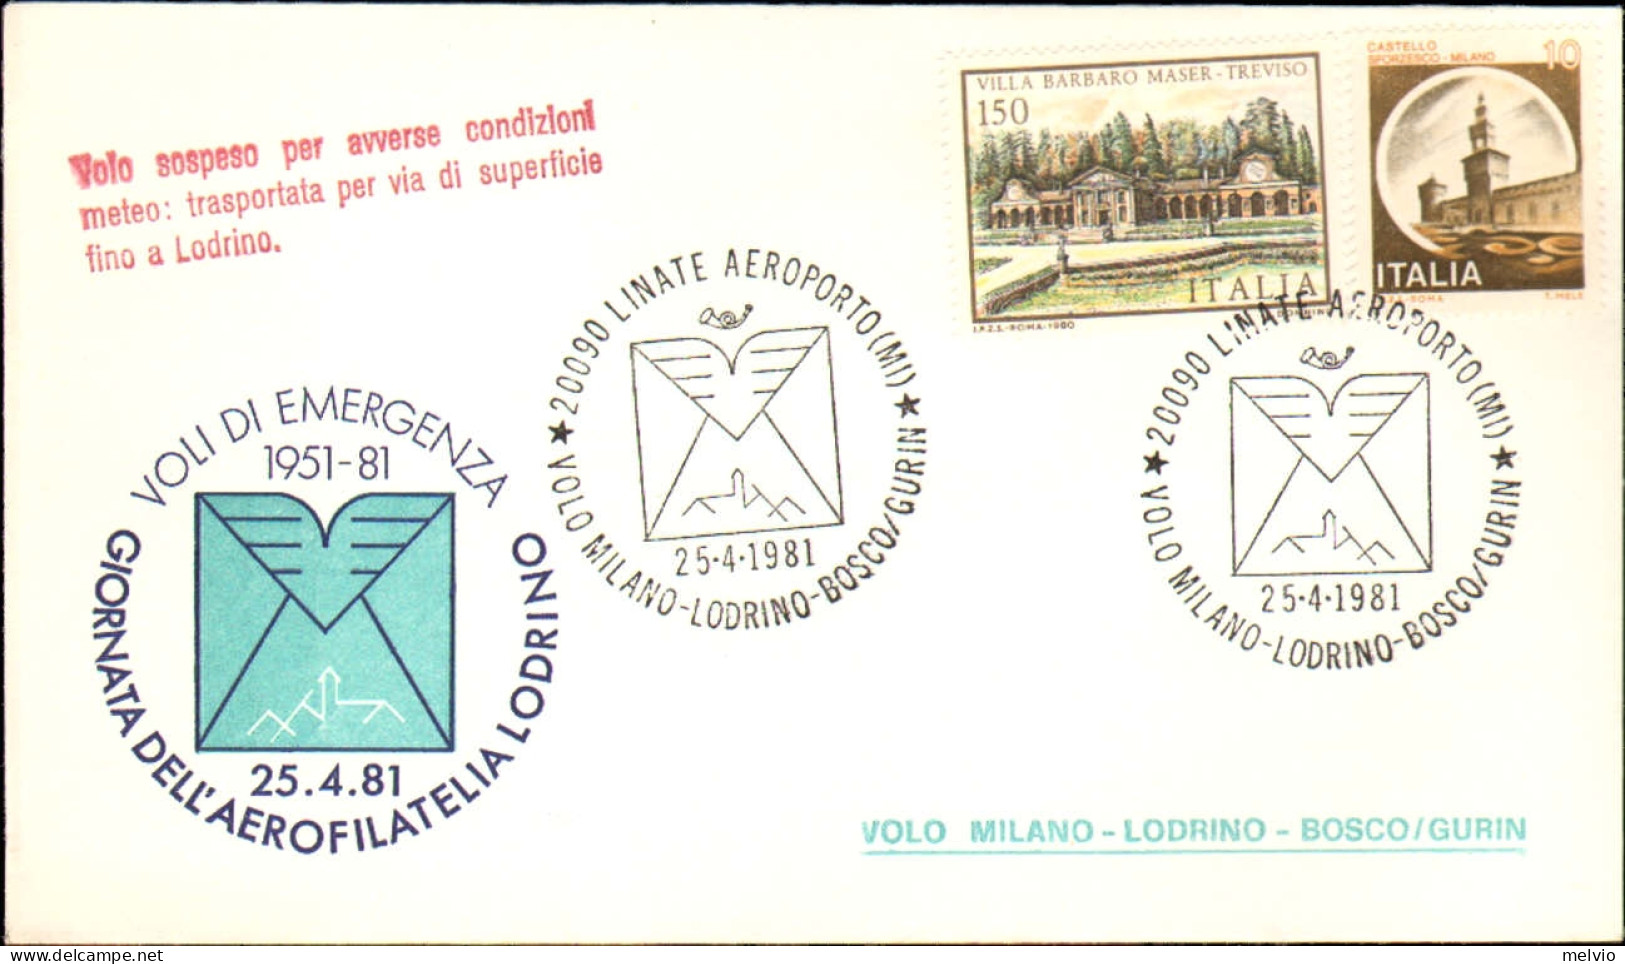 1981-volo Milano-Lodrino-Bosco/Gurin - Luftpost